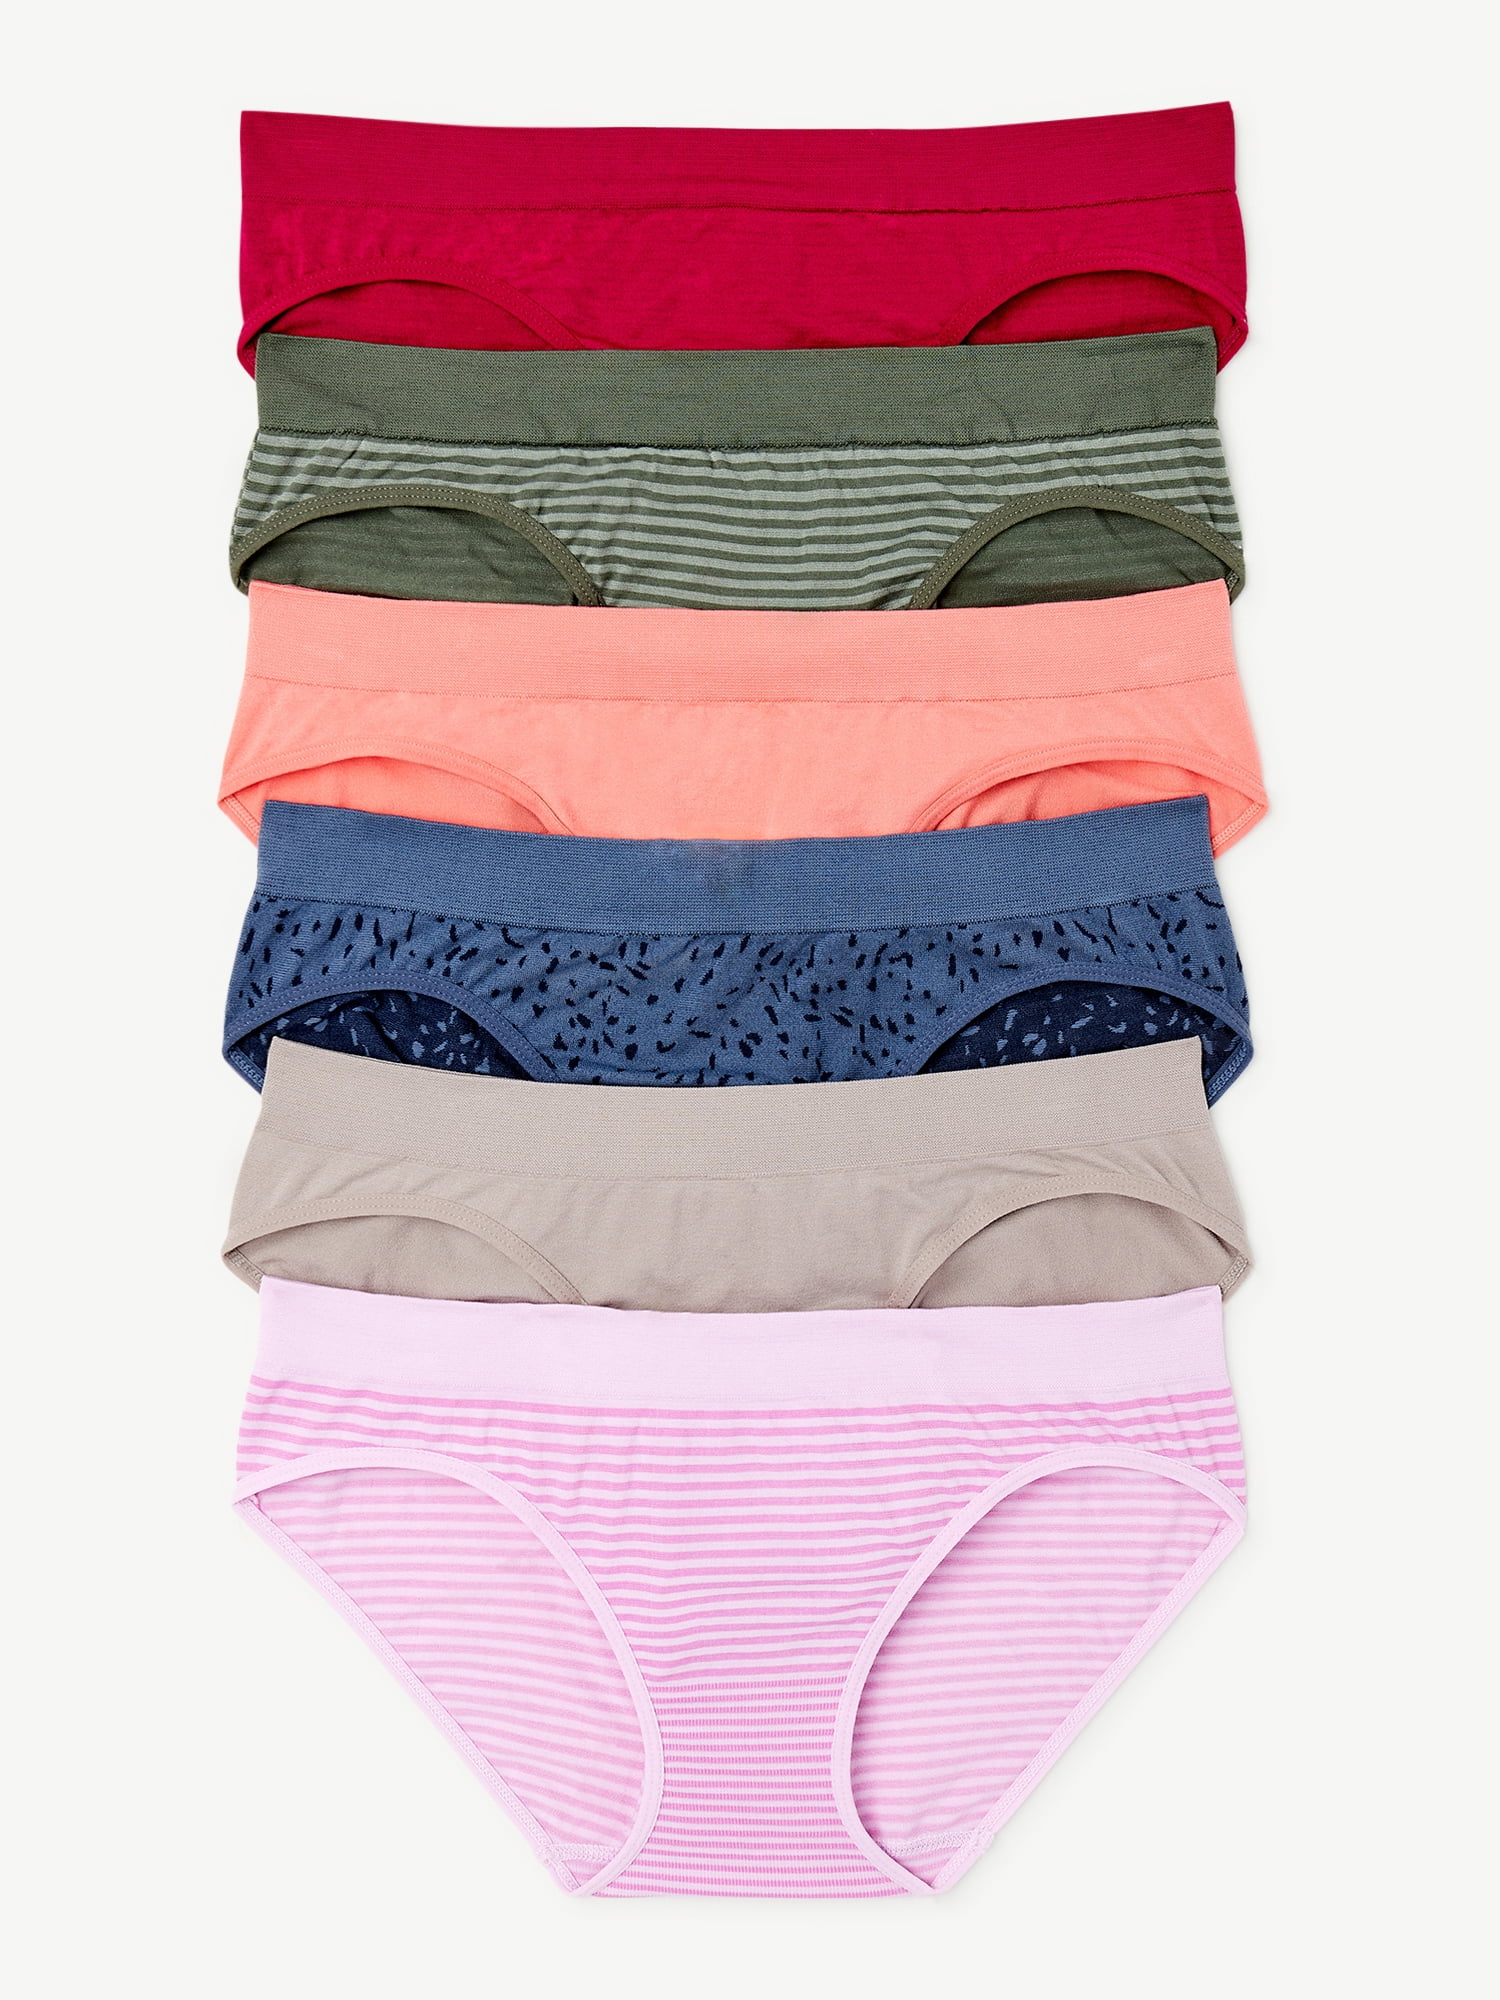 joyspun, Intimates & Sleepwear, Joyspun Lace Bikini Underwear Size Xl618